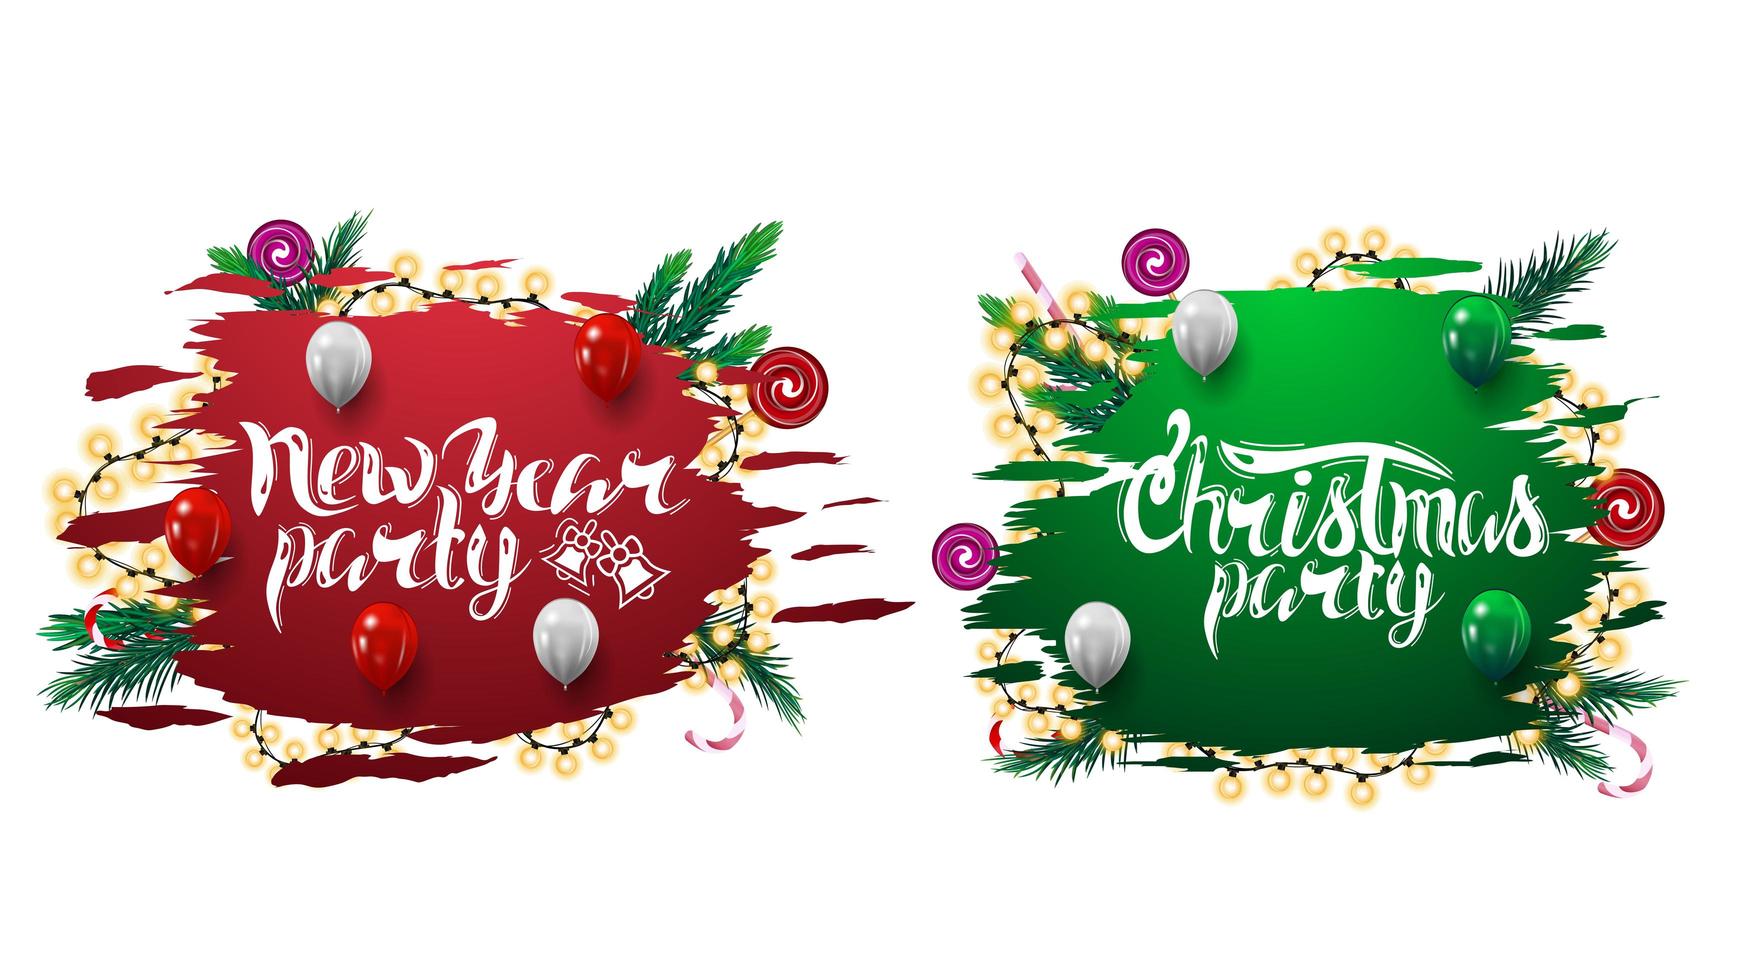 verzameling van kerstfeest uitnodiging webbanners met abstracte haveloze vormen versierd met kerstboomtakken, snoepjes en slingers op wit wordt geïsoleerd vector